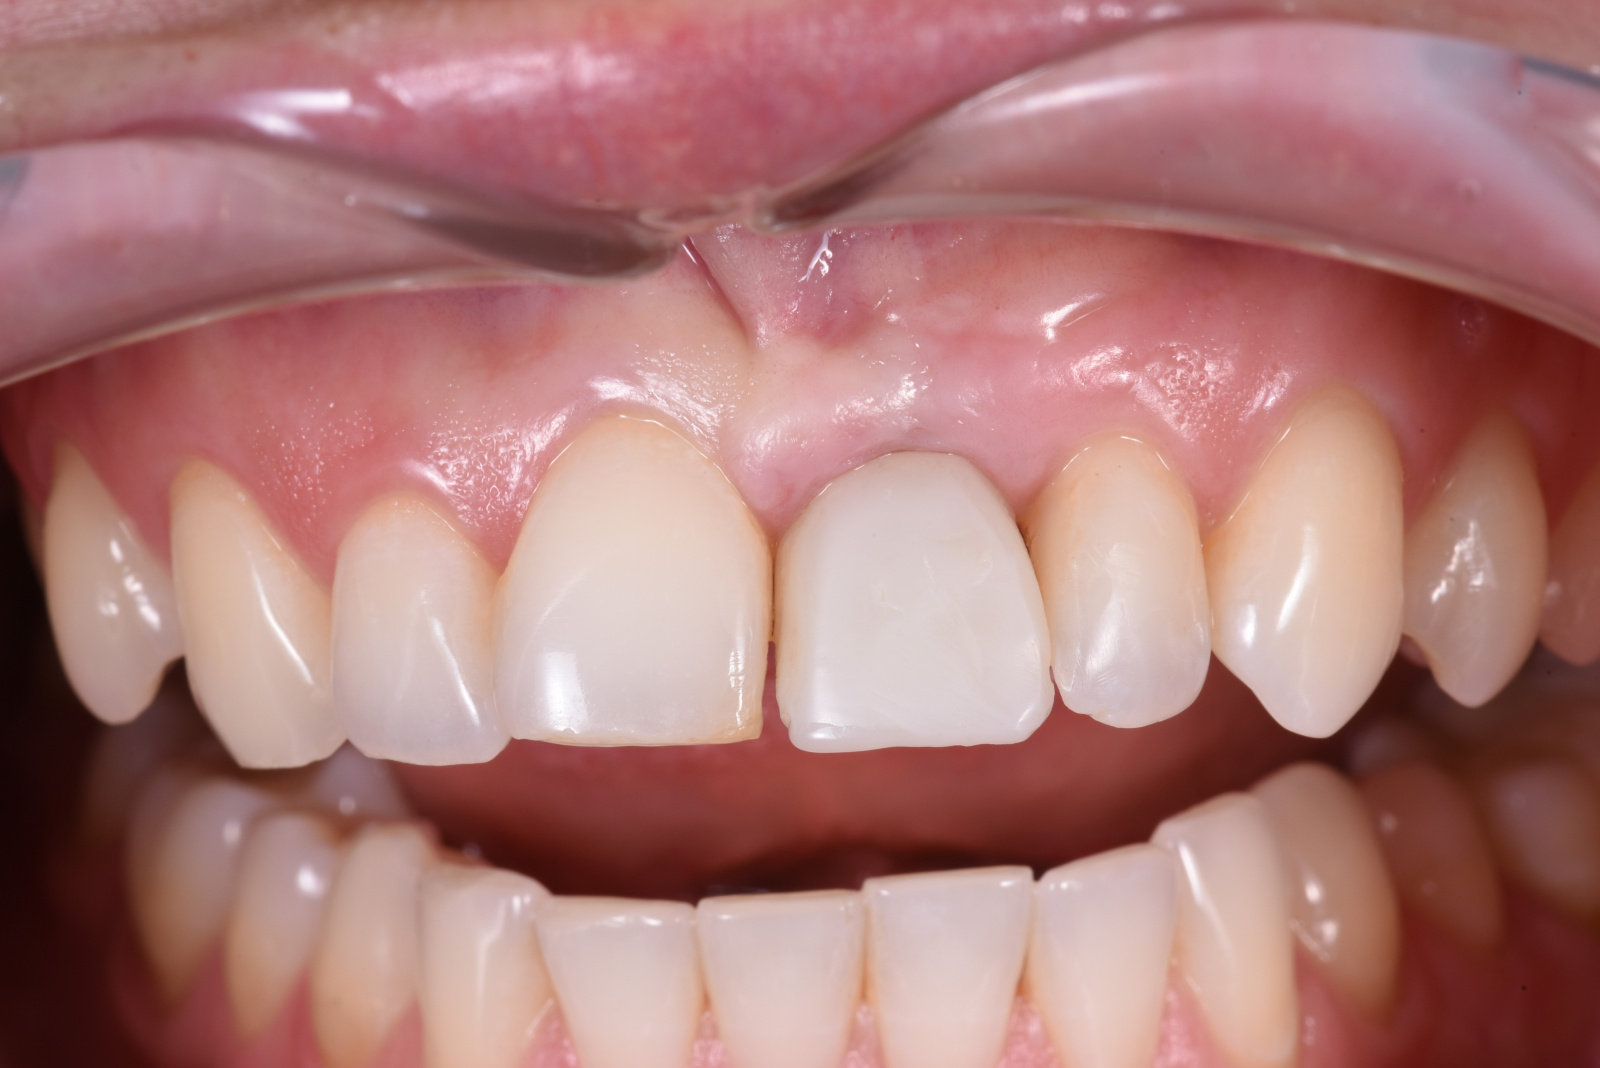 Работа врача: Установка имплантата 21-го зуба